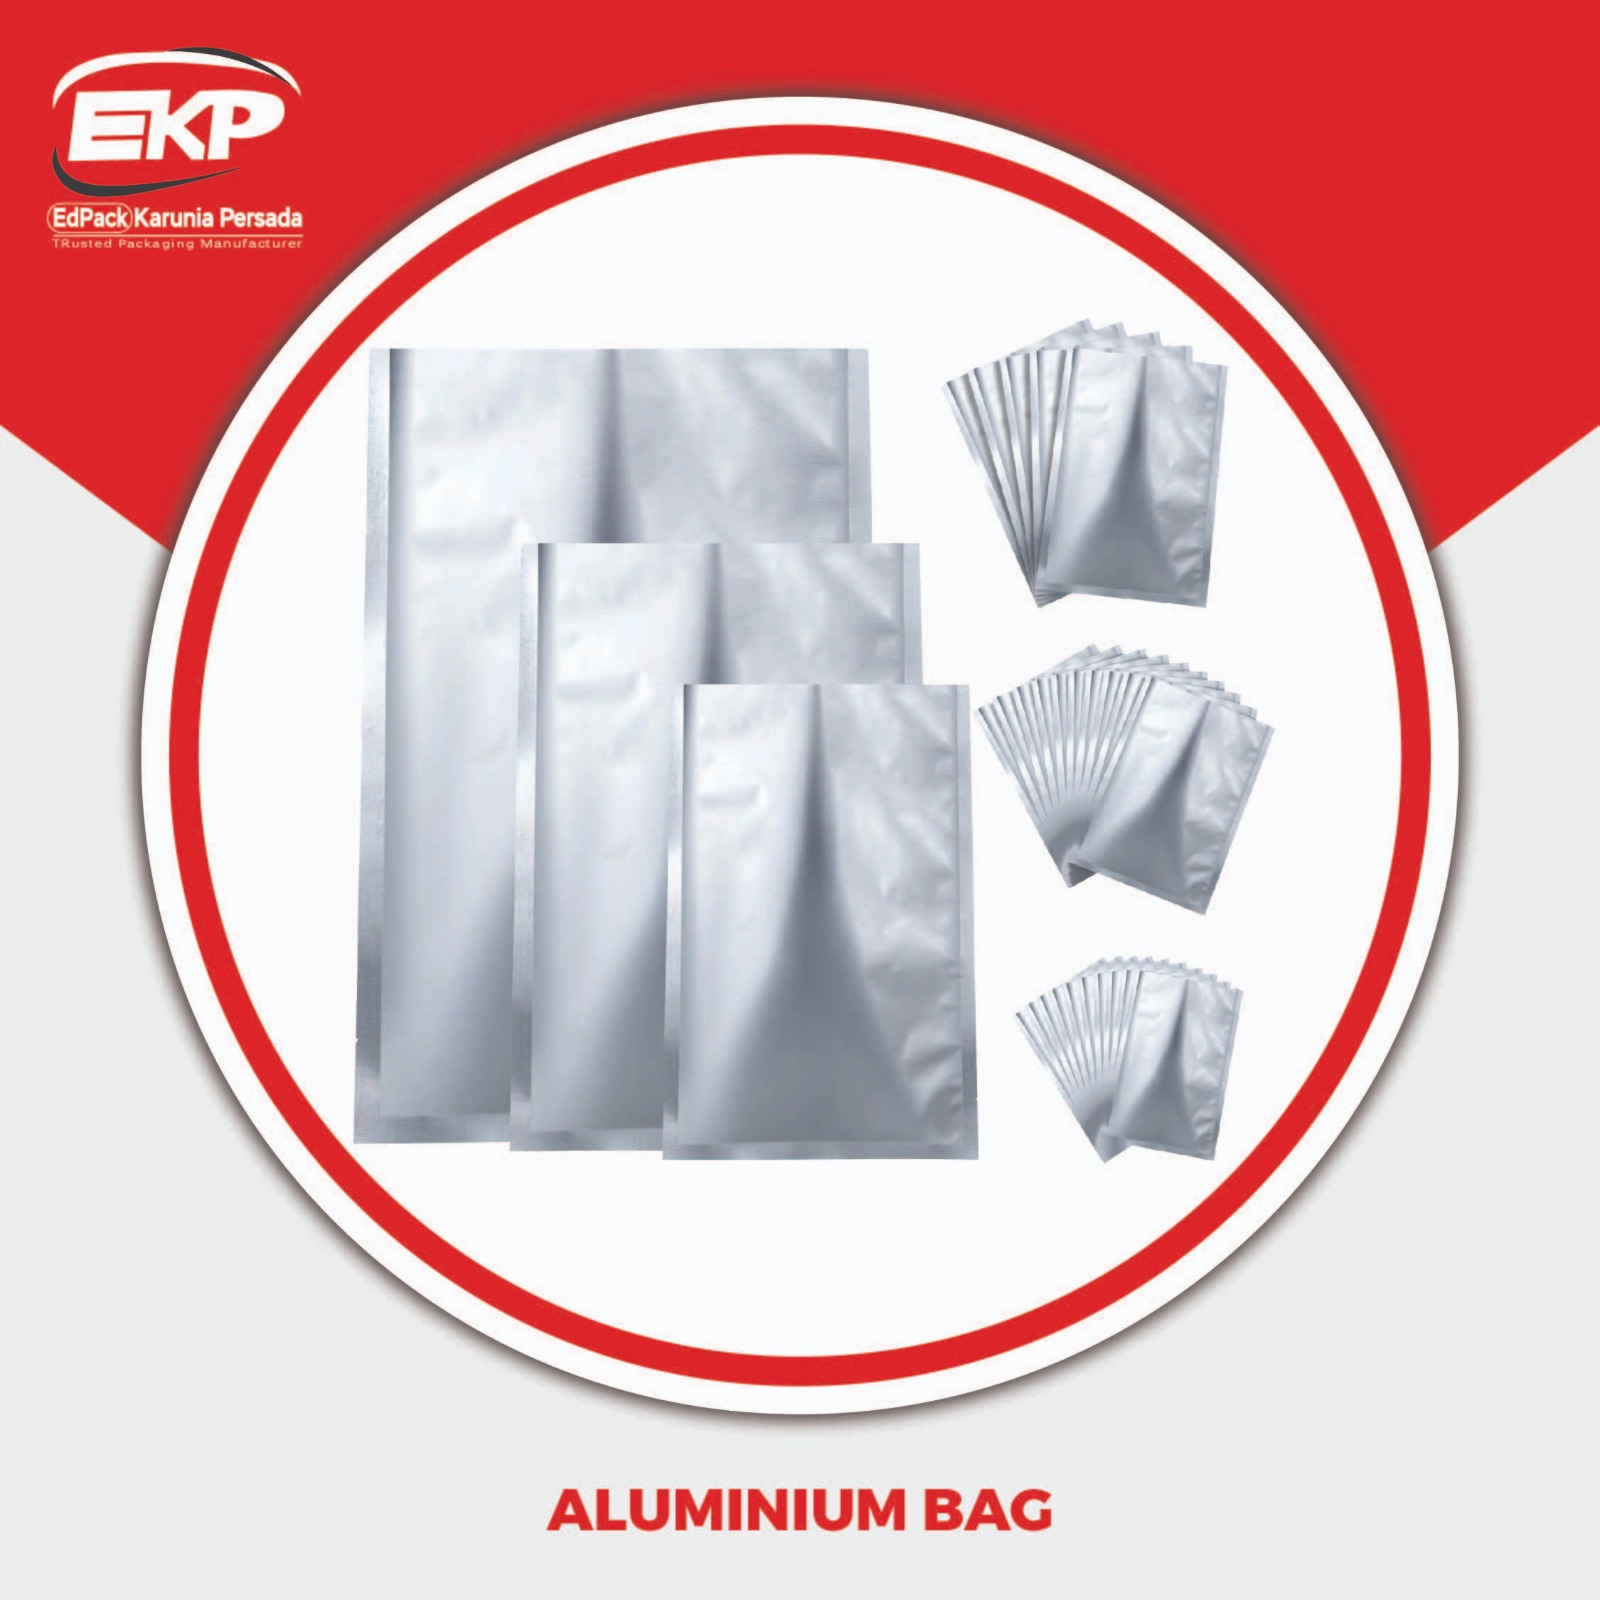 Allumunium Bag